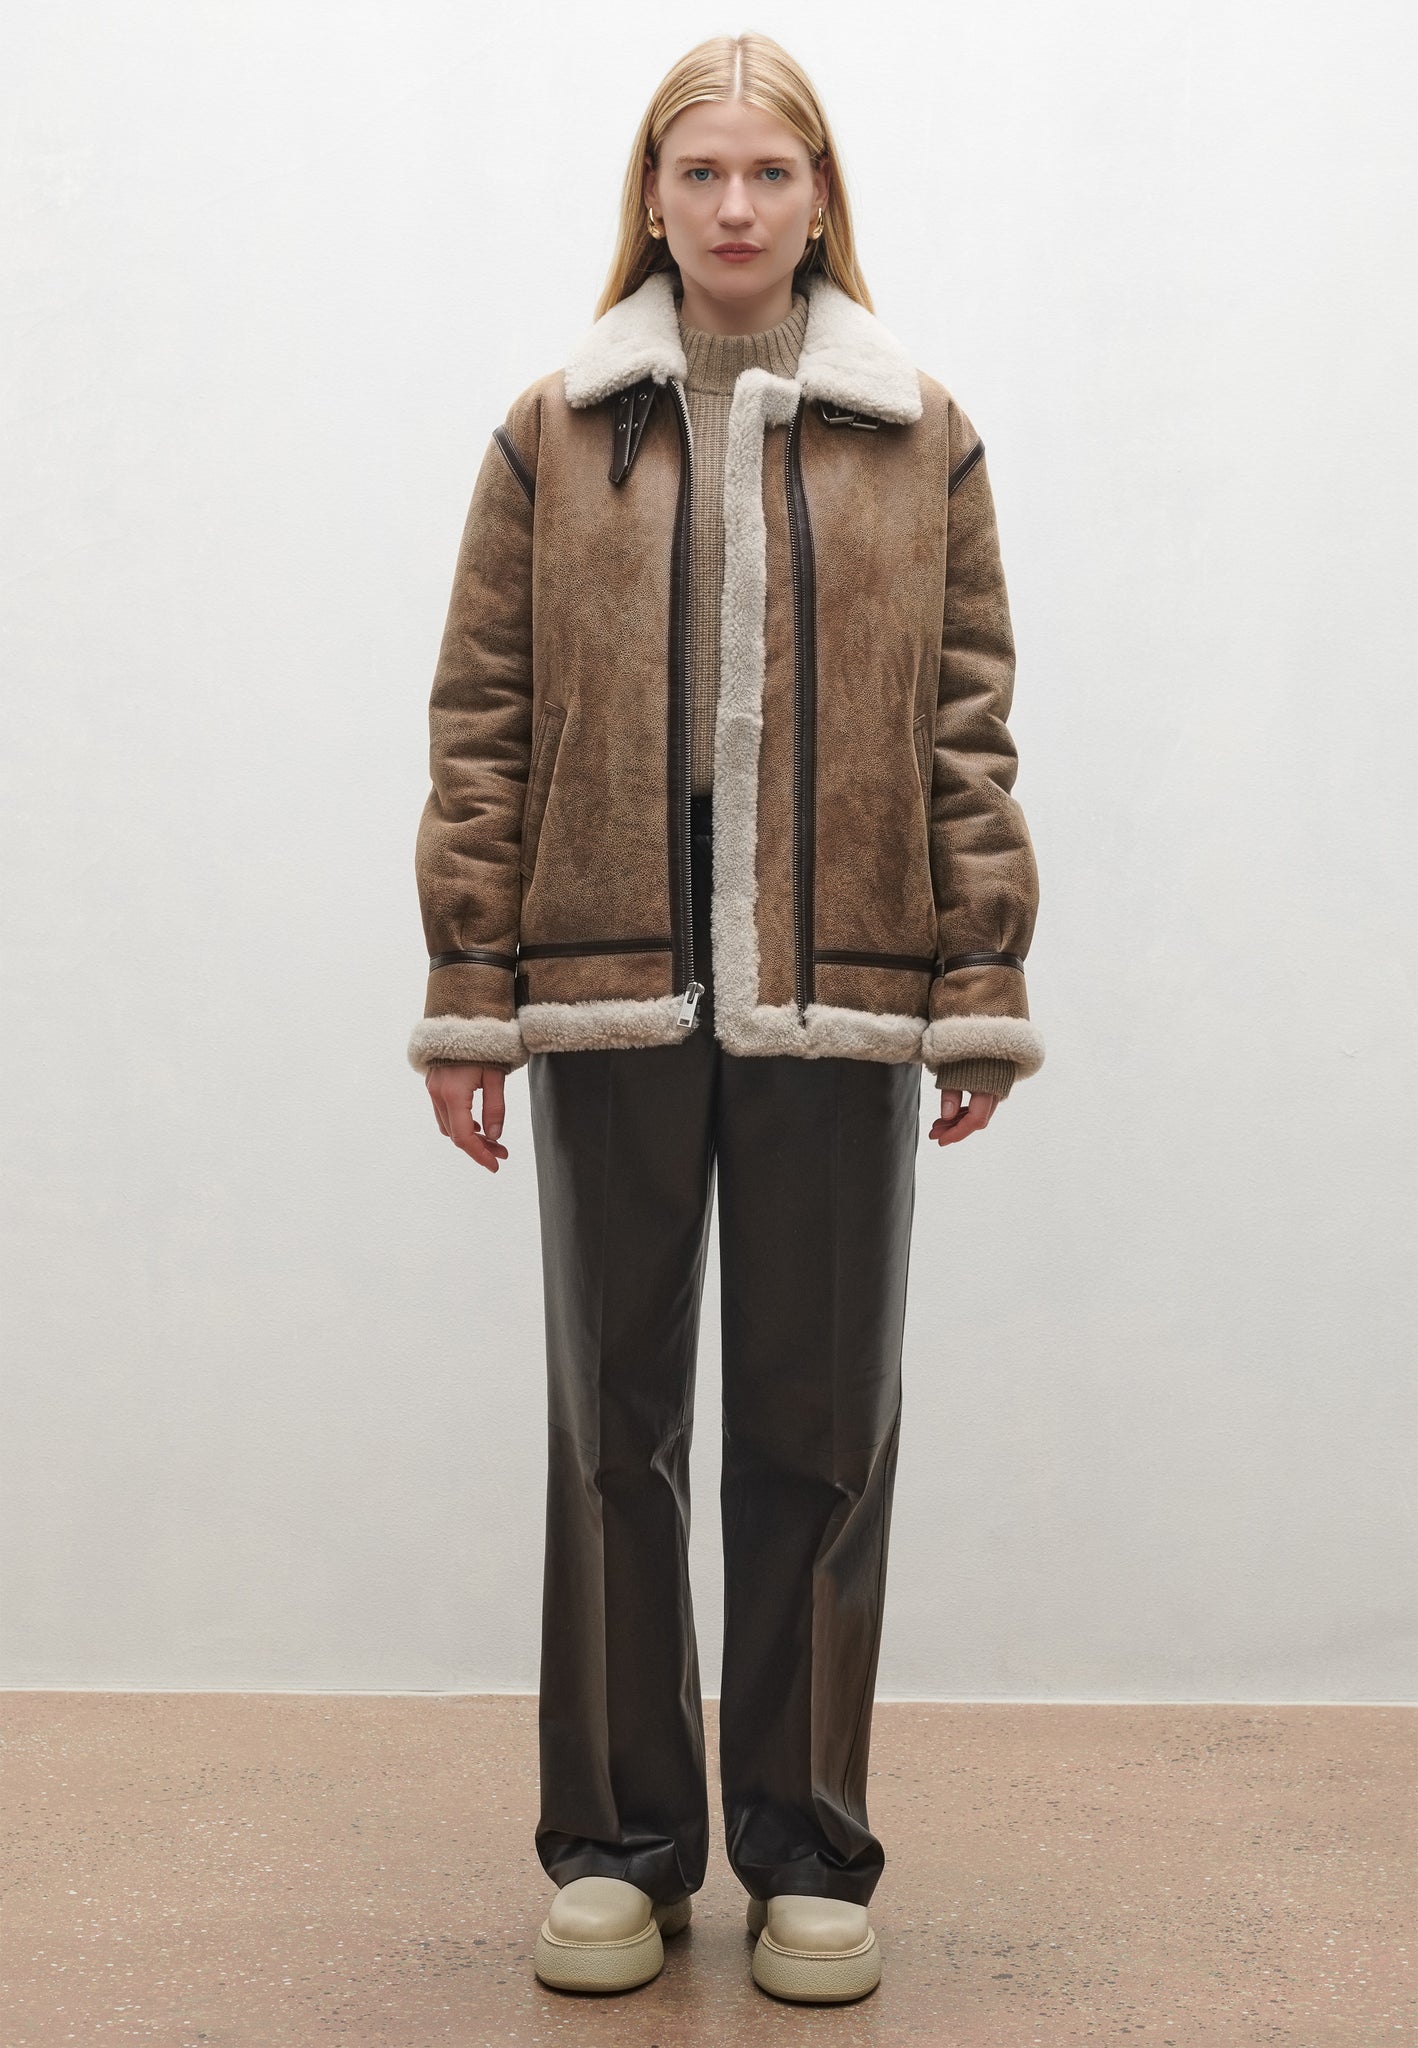 KILANA | Aviator inspired shearling jacket